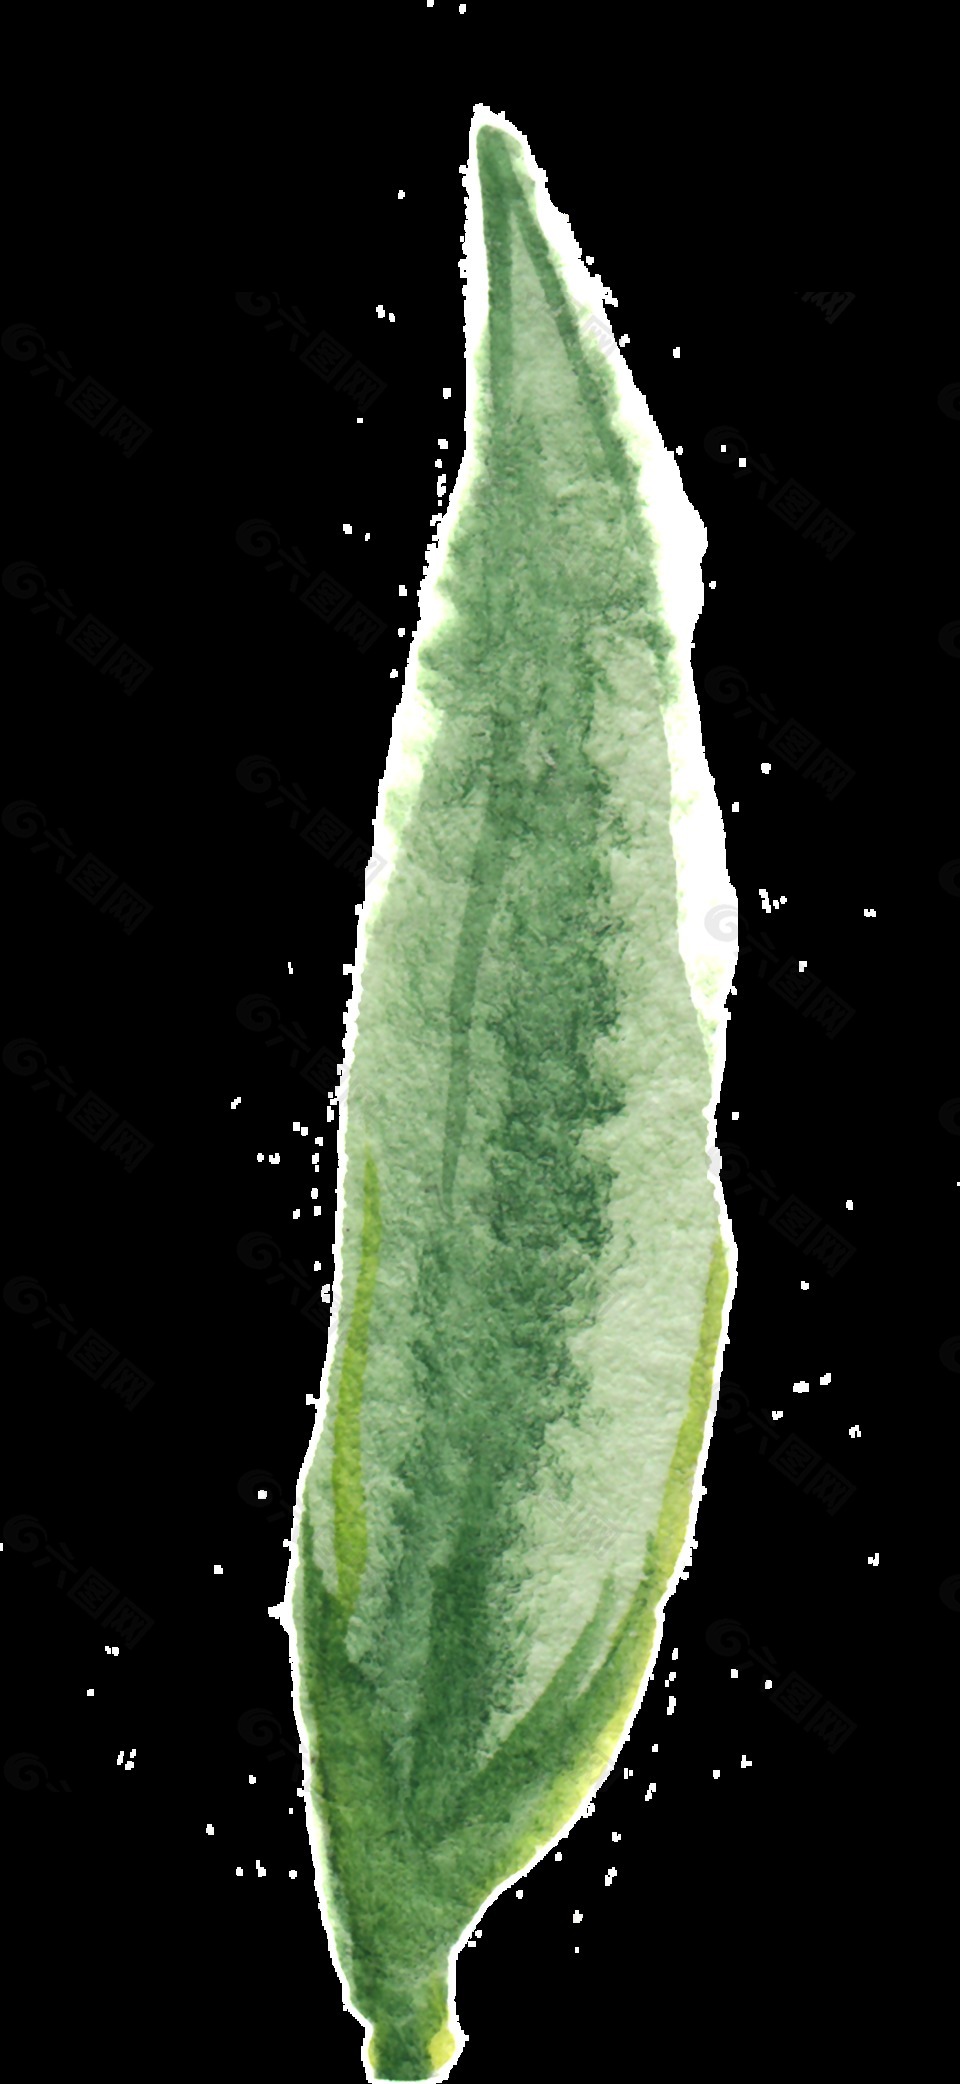 芦荟绿枝透明装饰素材